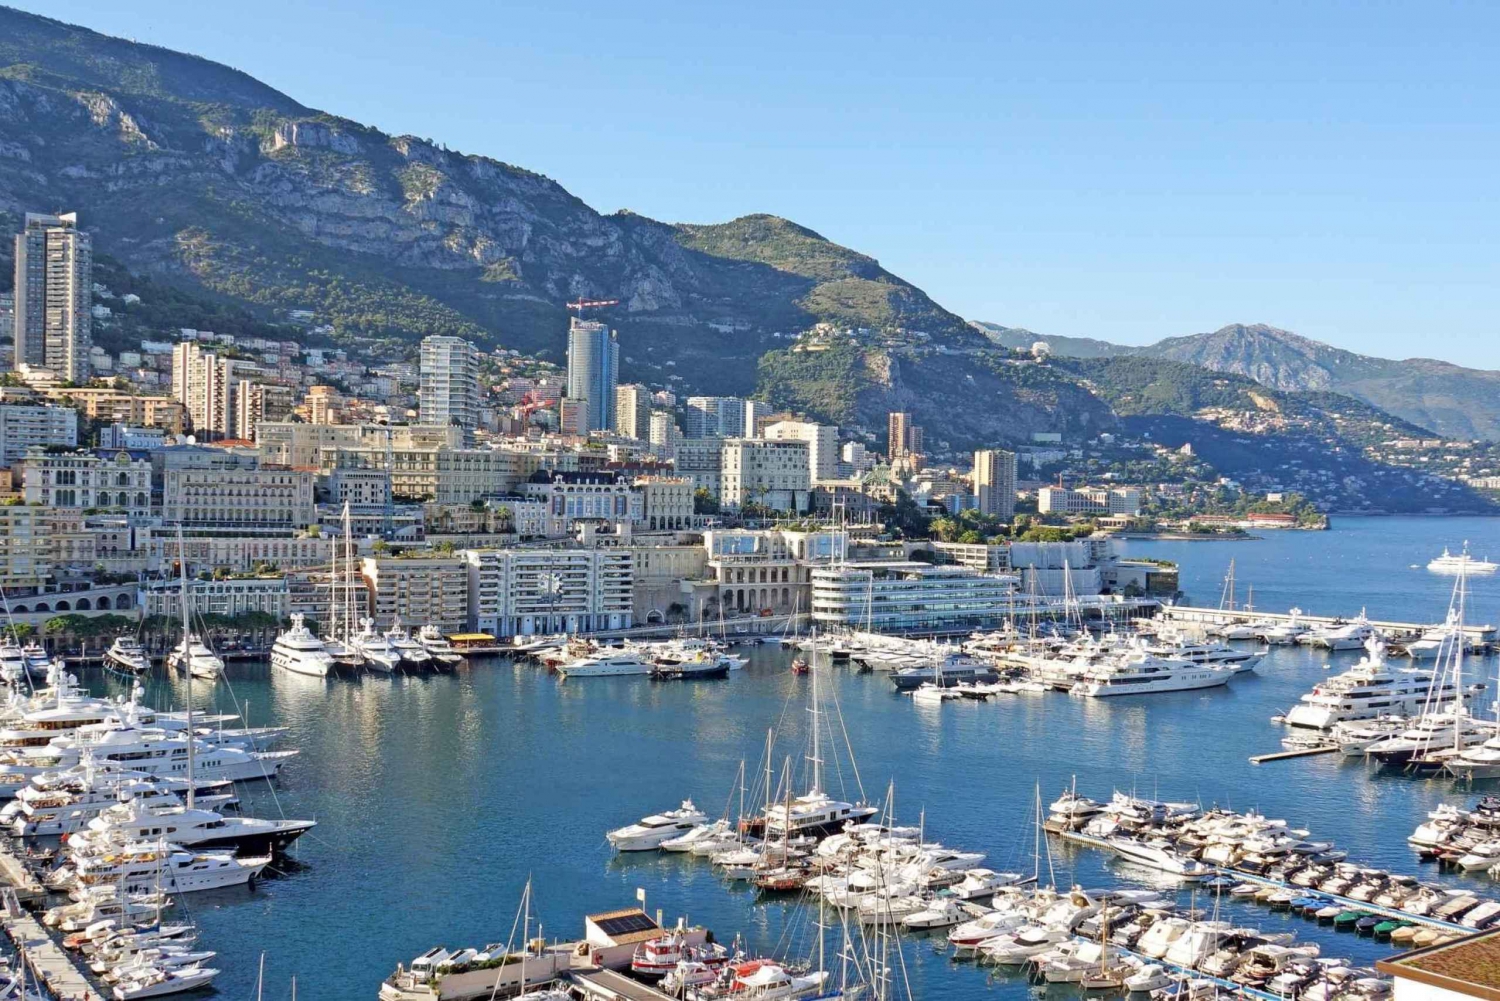 Dagvullende tour door Nice Cannes Antibes en Saint Tropez